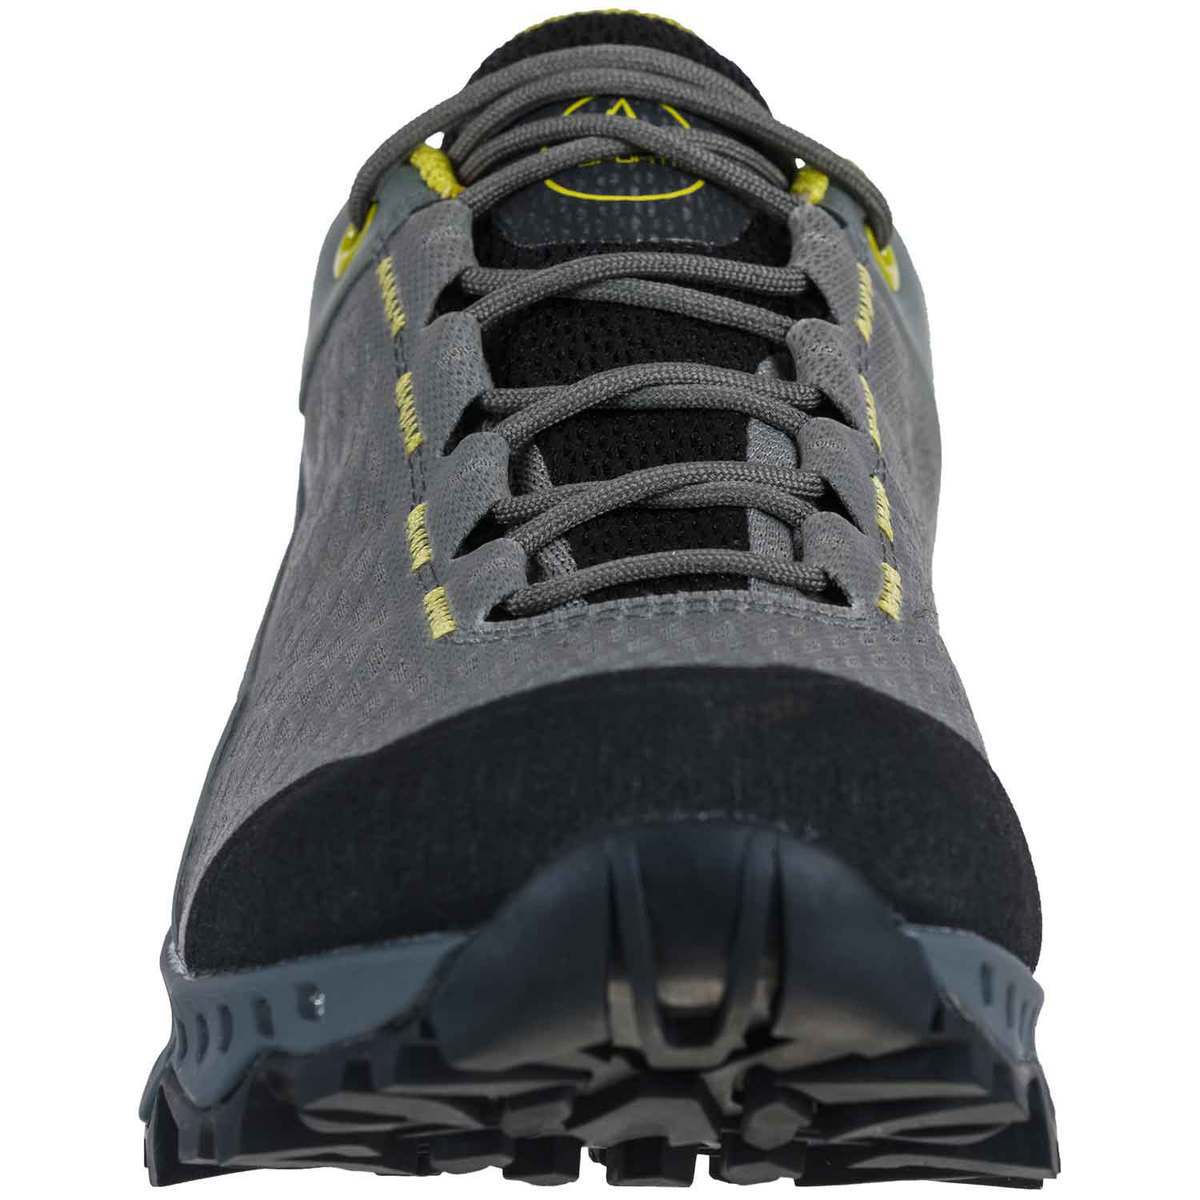 La Sportiva Women's Spire Waterproof Low Hiking Shoes - Clay - Size 8 ...